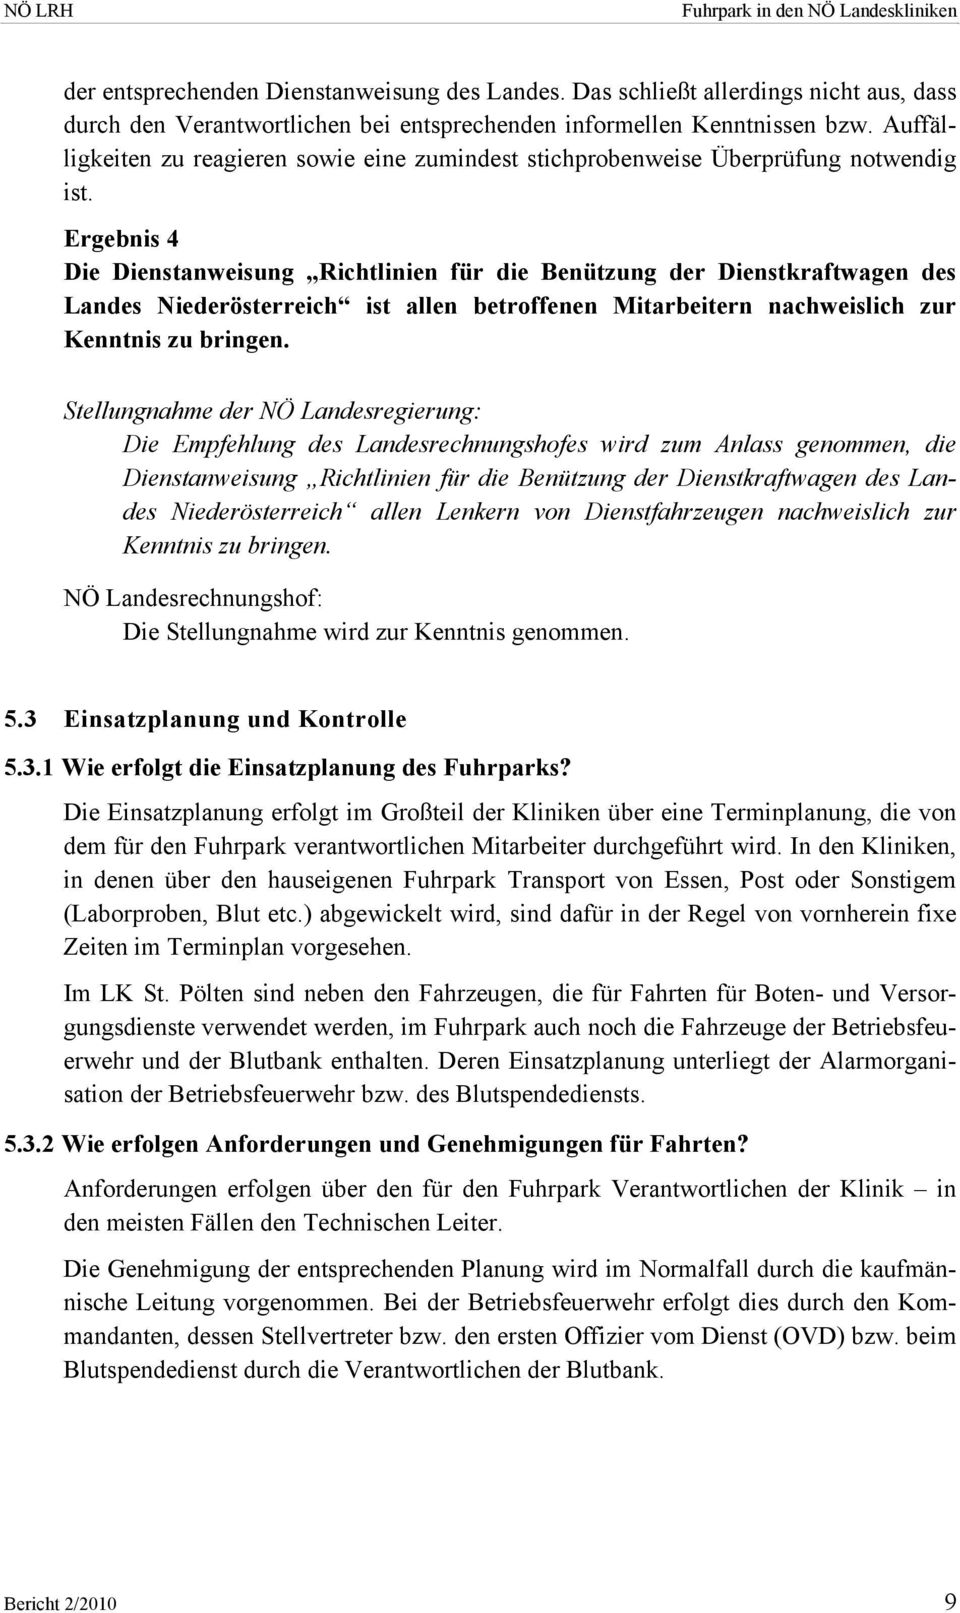 Ergebnis 4 Die Dienstanweisung Richtlinien für die Benützung der Dienstkraftwagen des Landes Niederösterreich ist allen betroffenen Mitarbeitern nachweislich zur Kenntnis zu bringen.